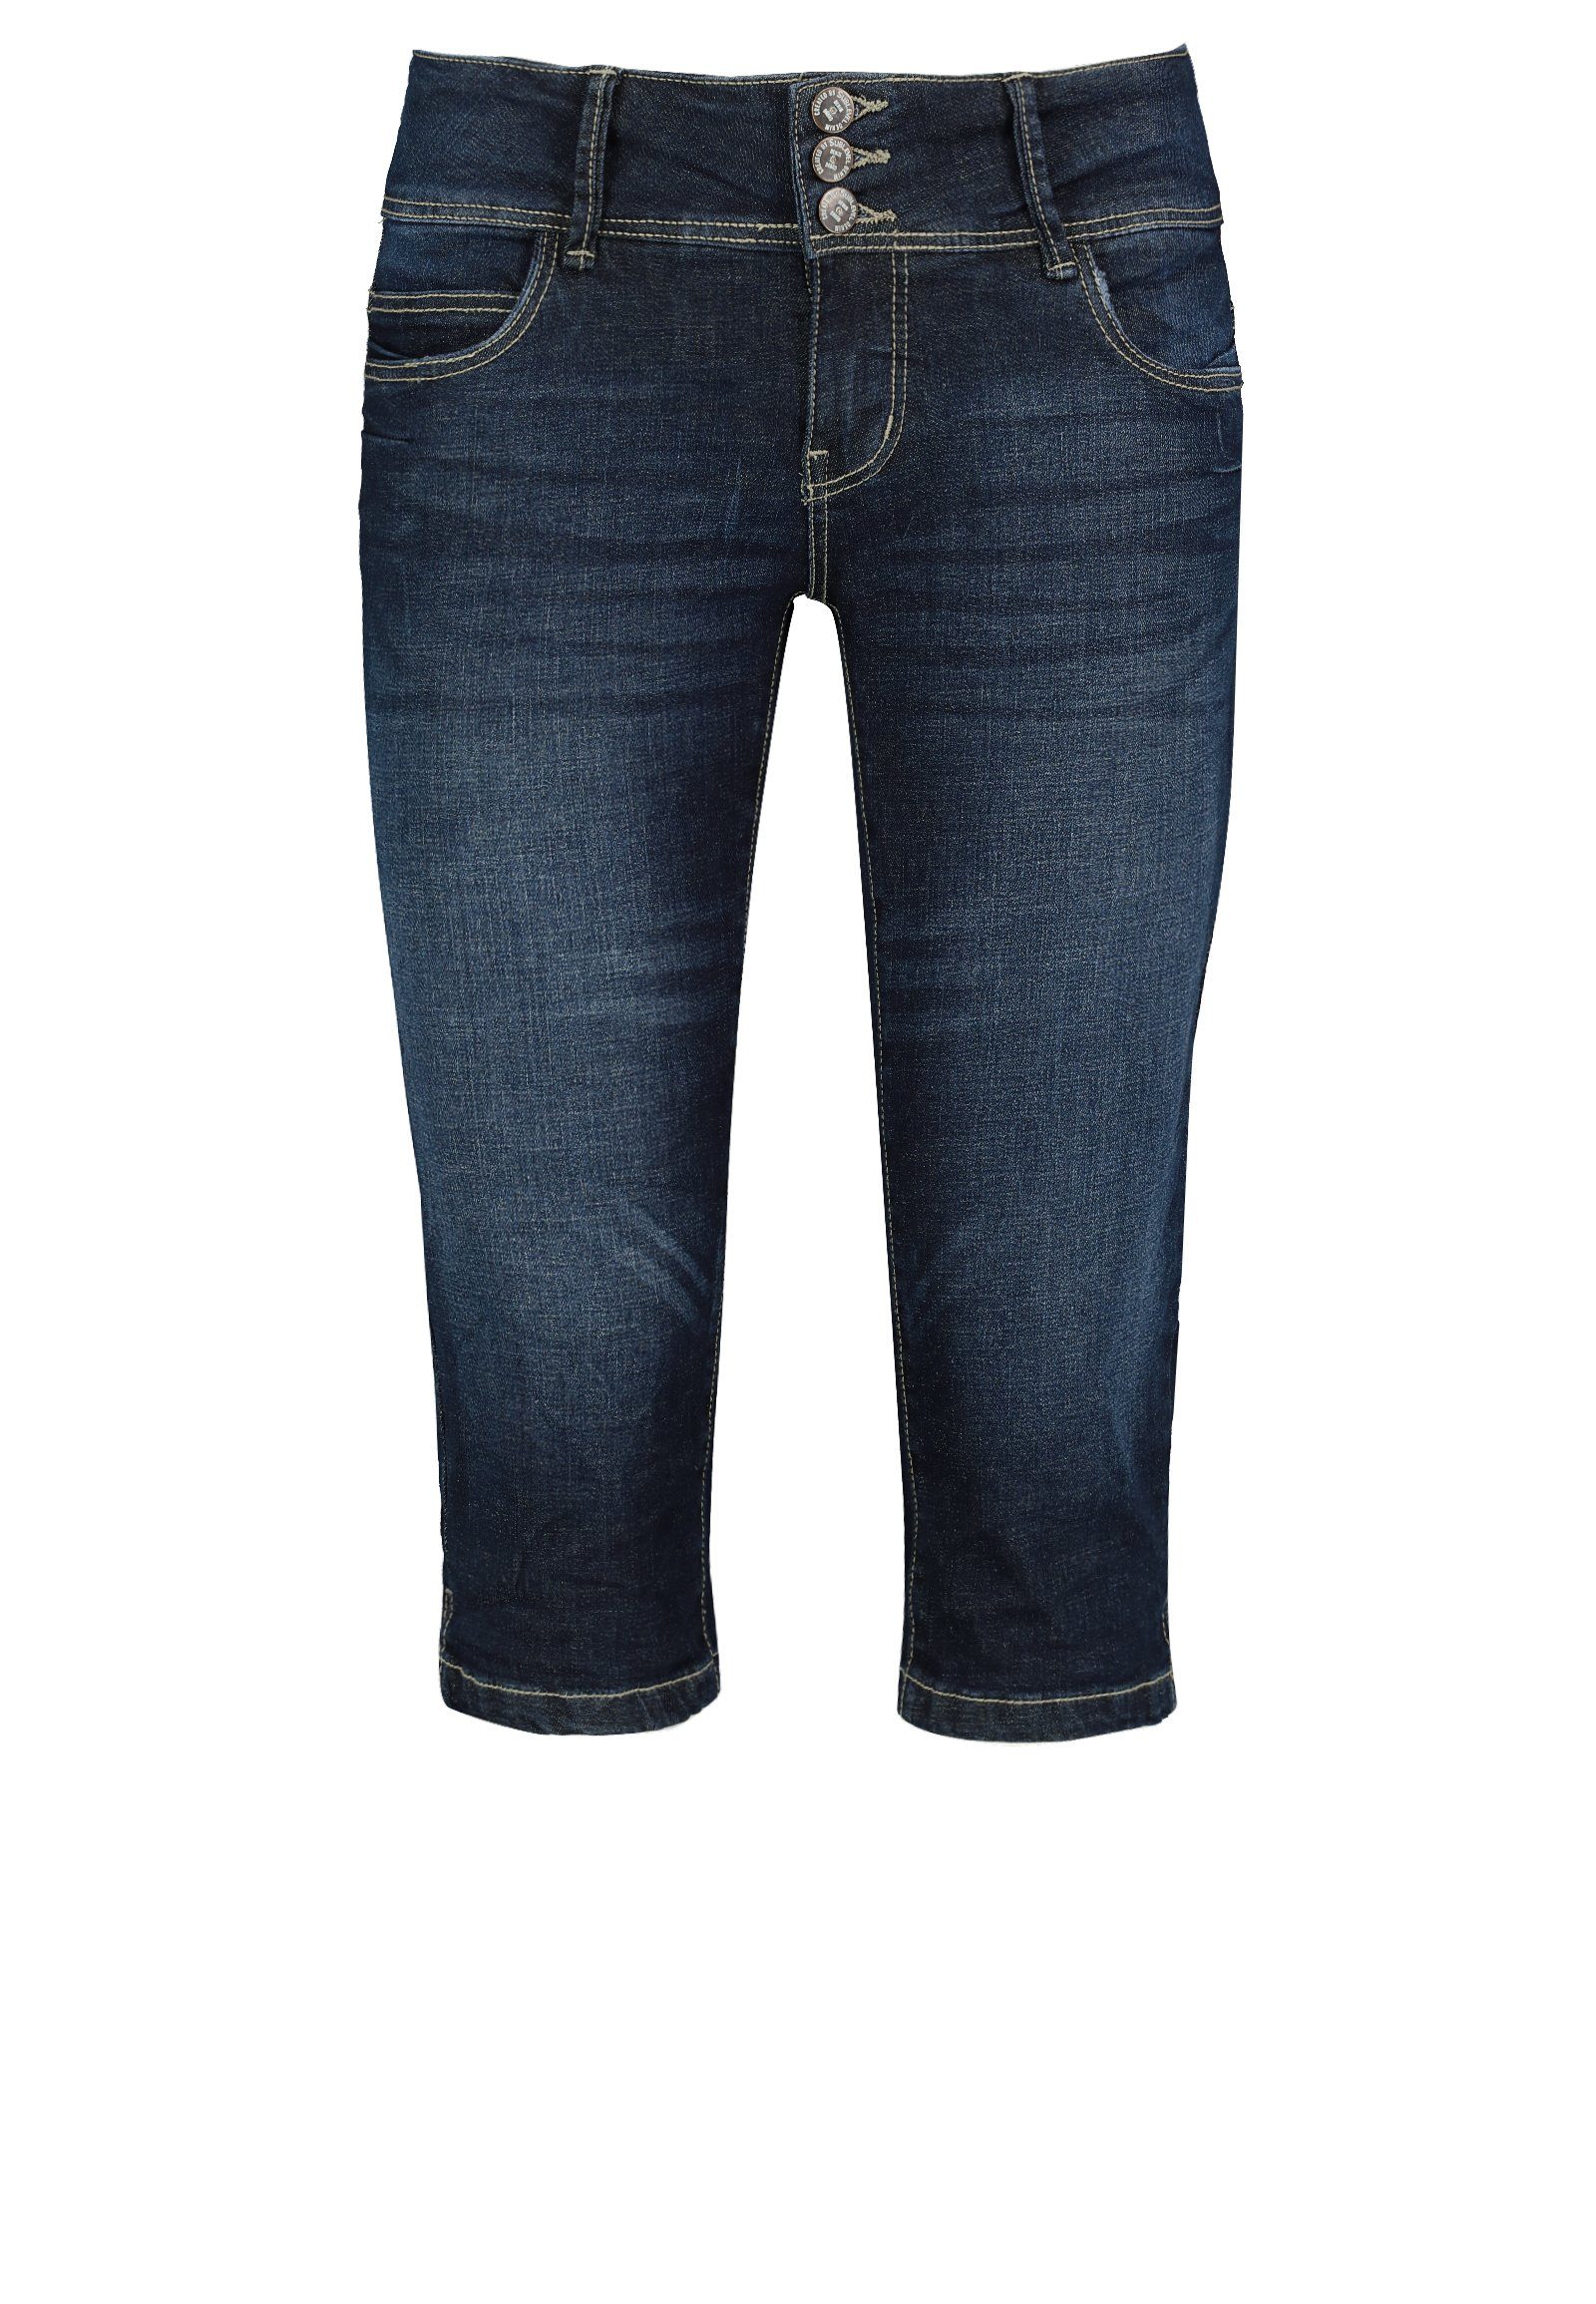 SUBLEVEL Jeans online kaufen | OTTO